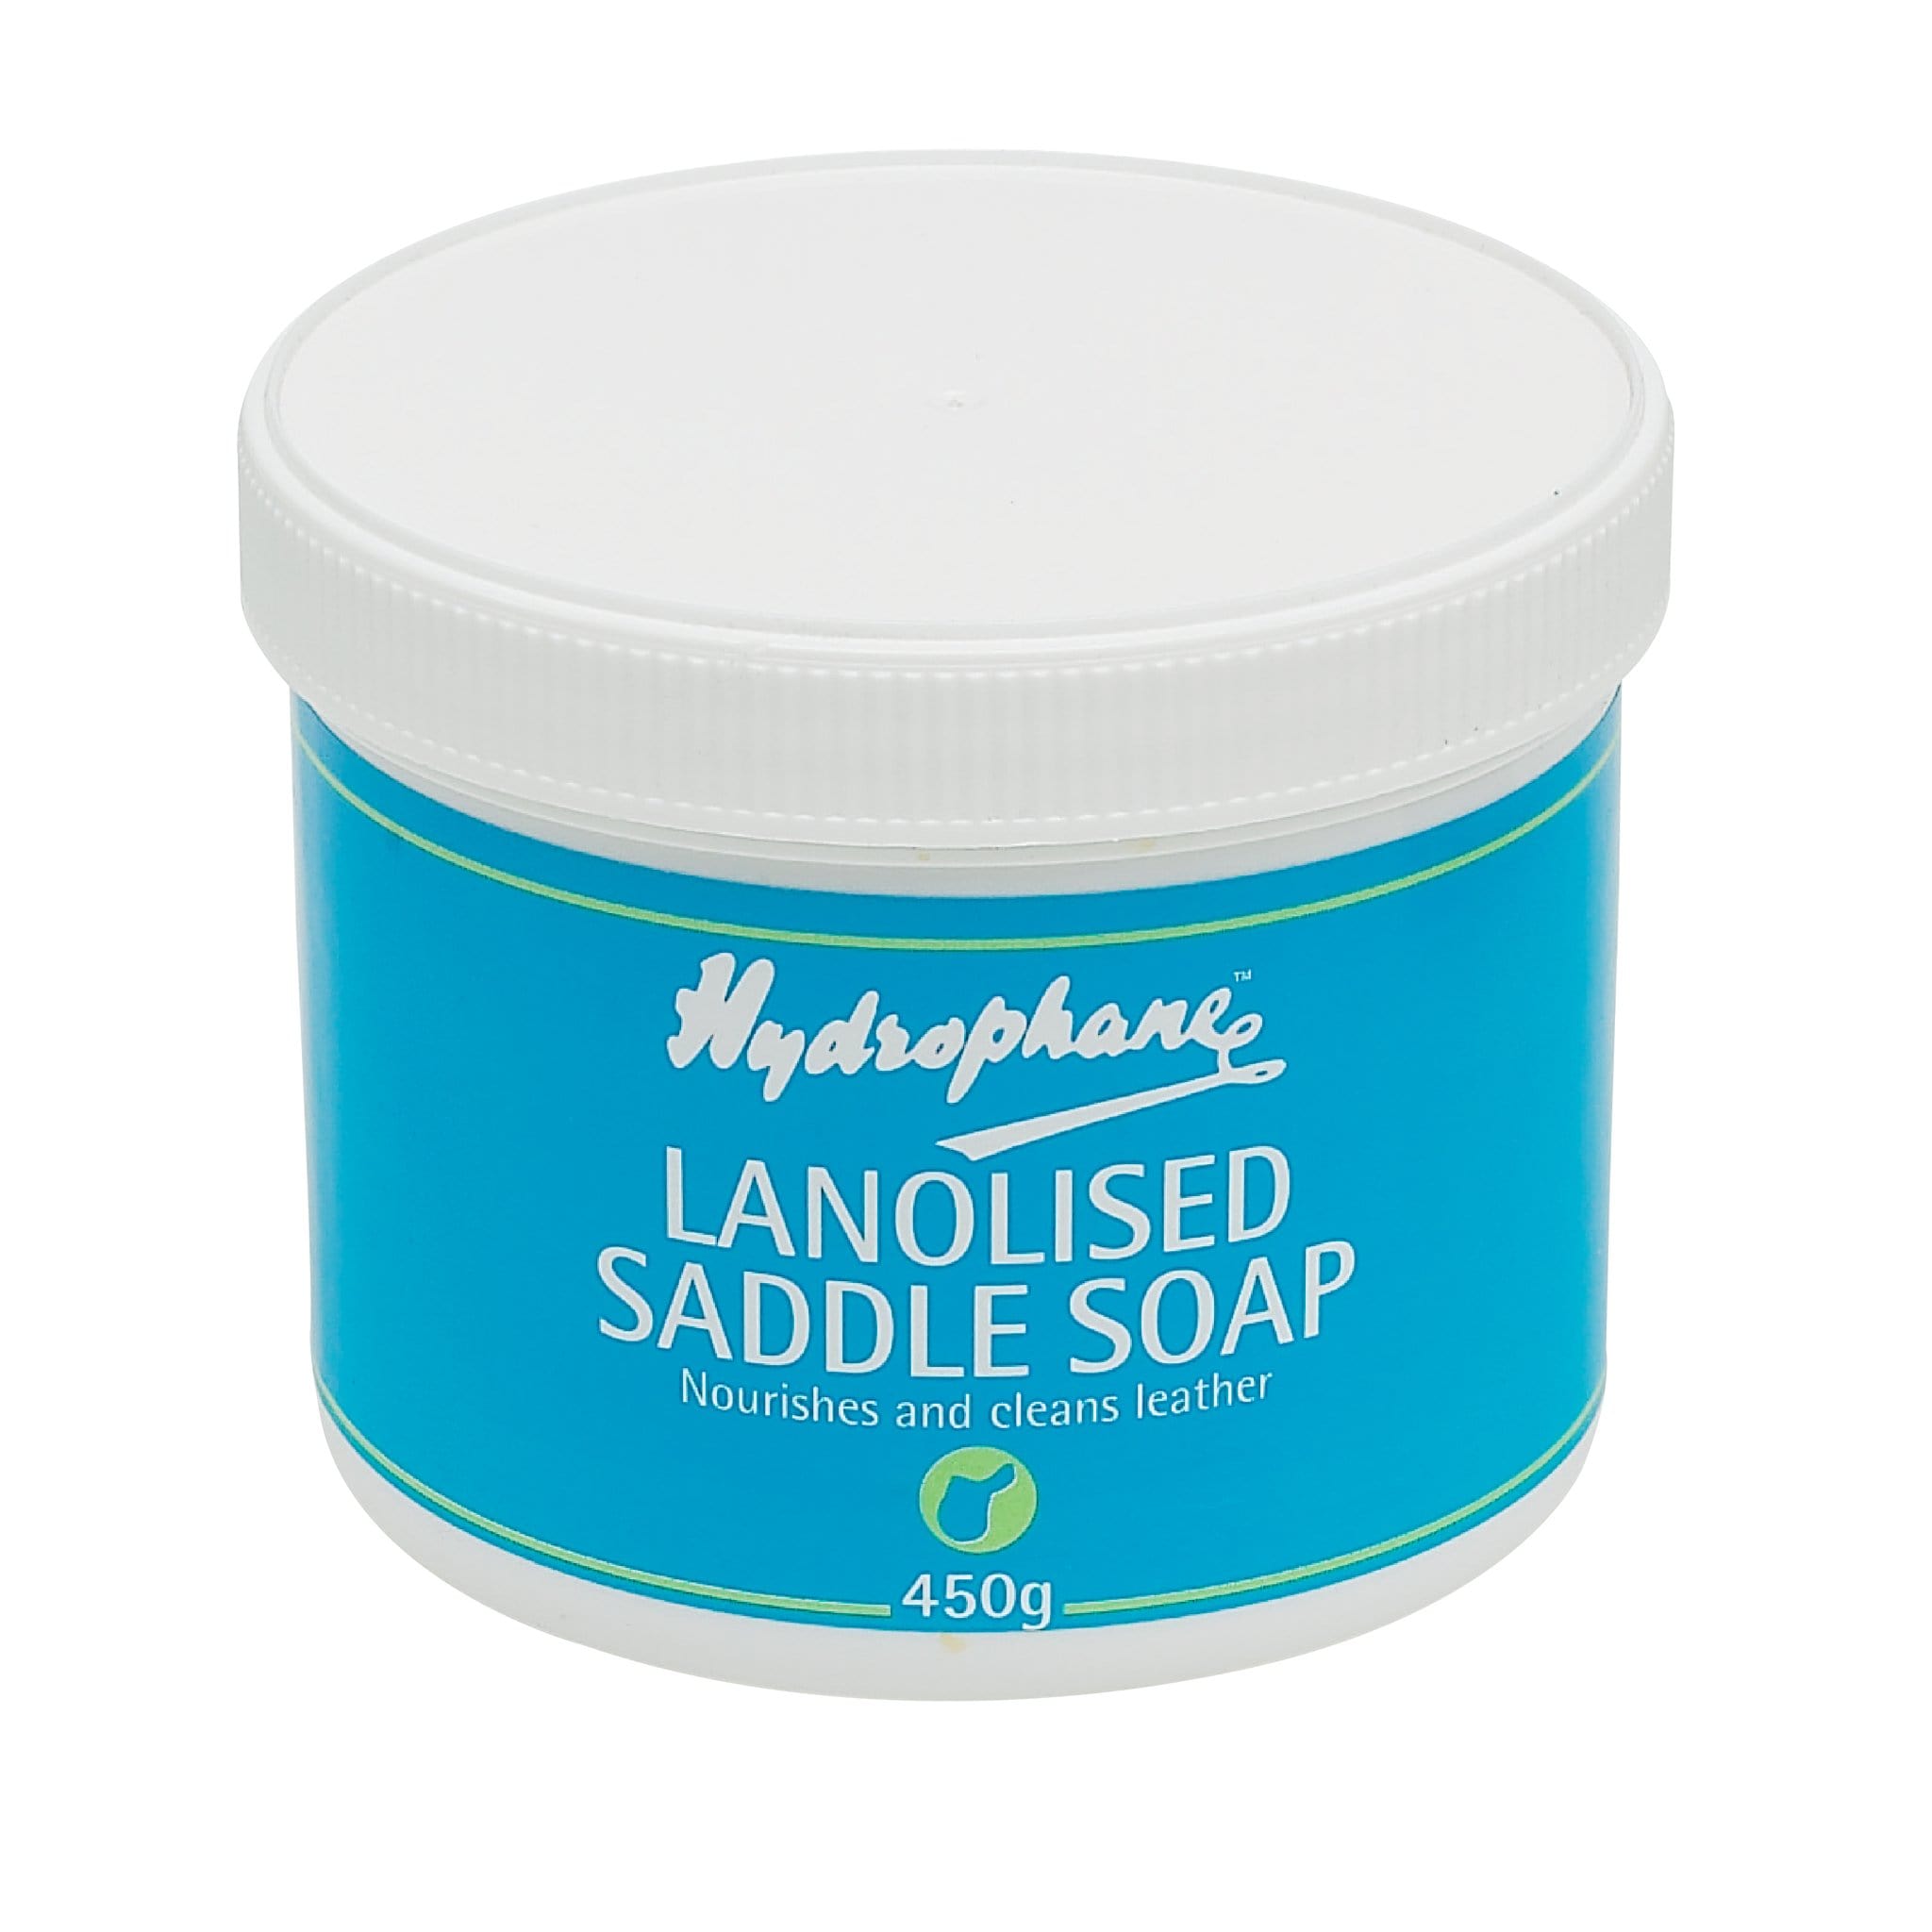 Hydrophane Lanolised Saddle Soap 5487